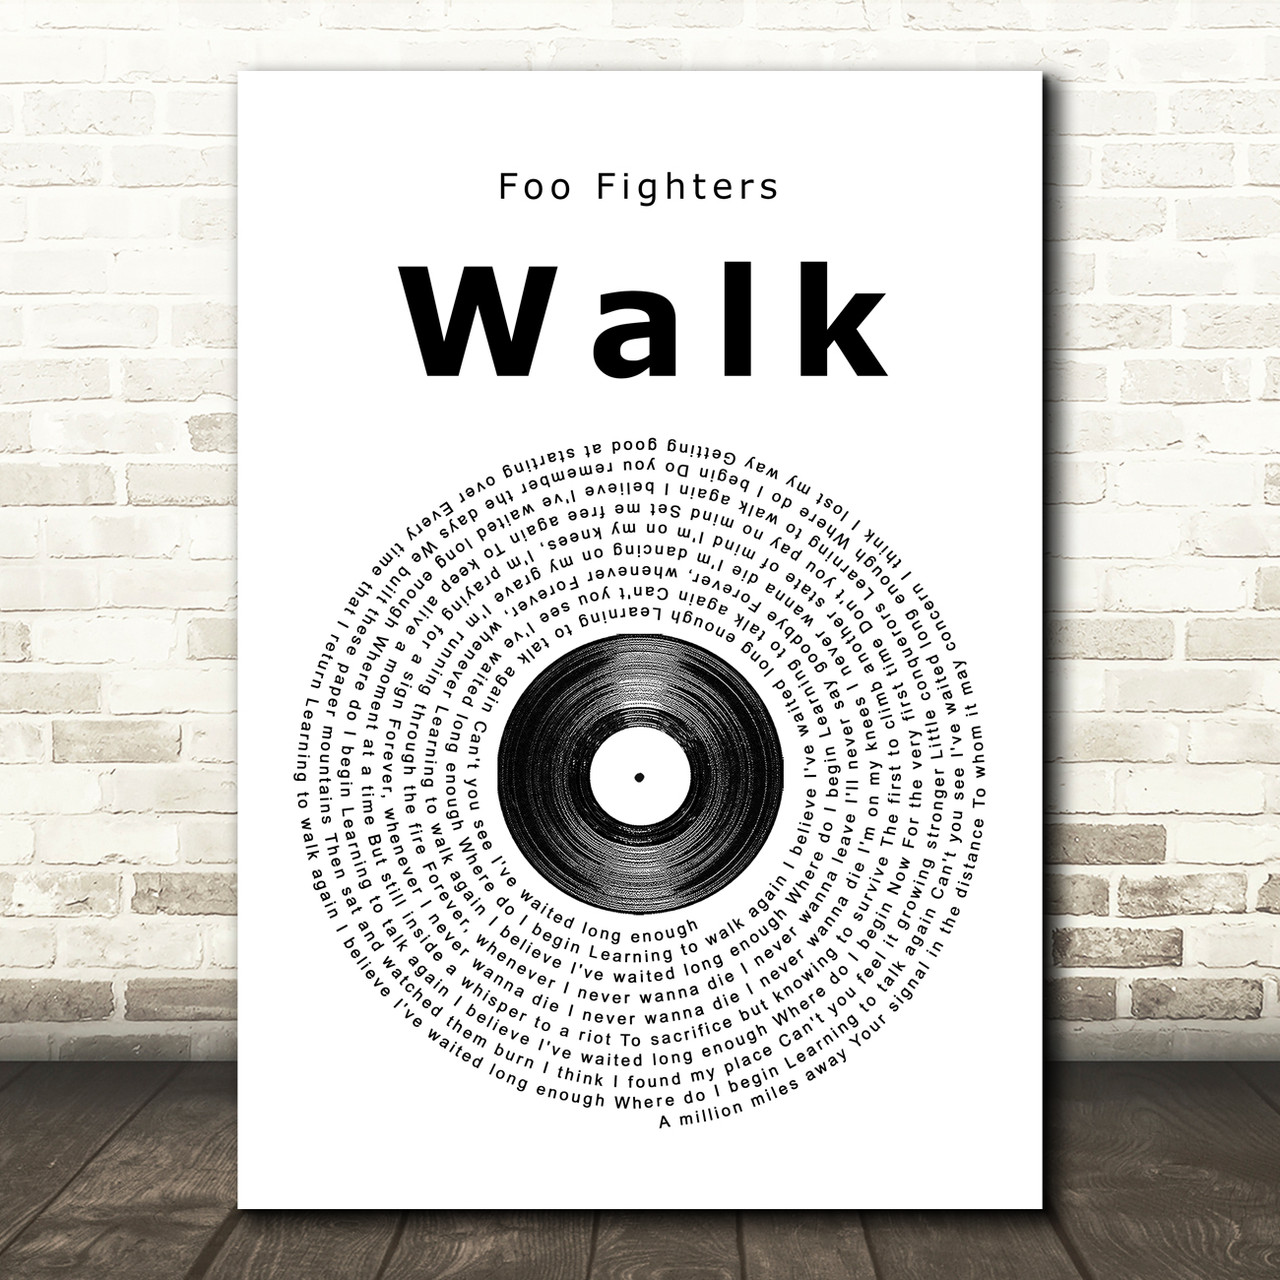 WALK - Foo Fighters 